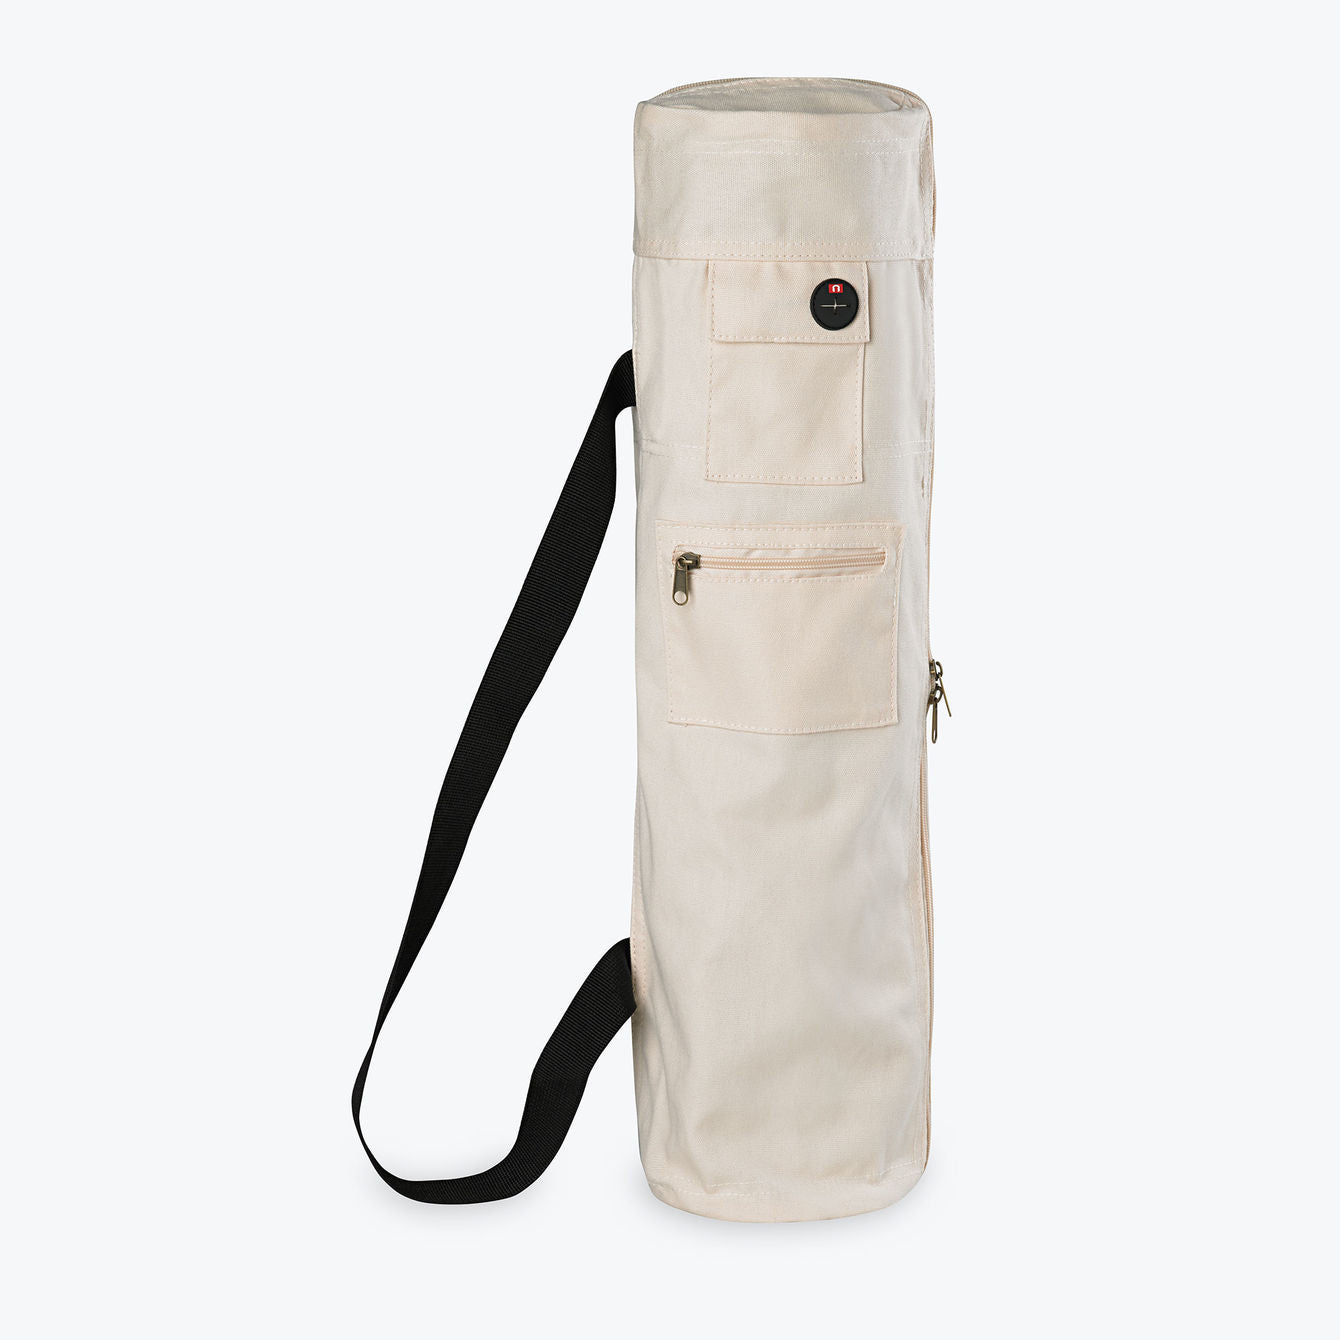 Bags, Gaiam Yoga Mat Bag